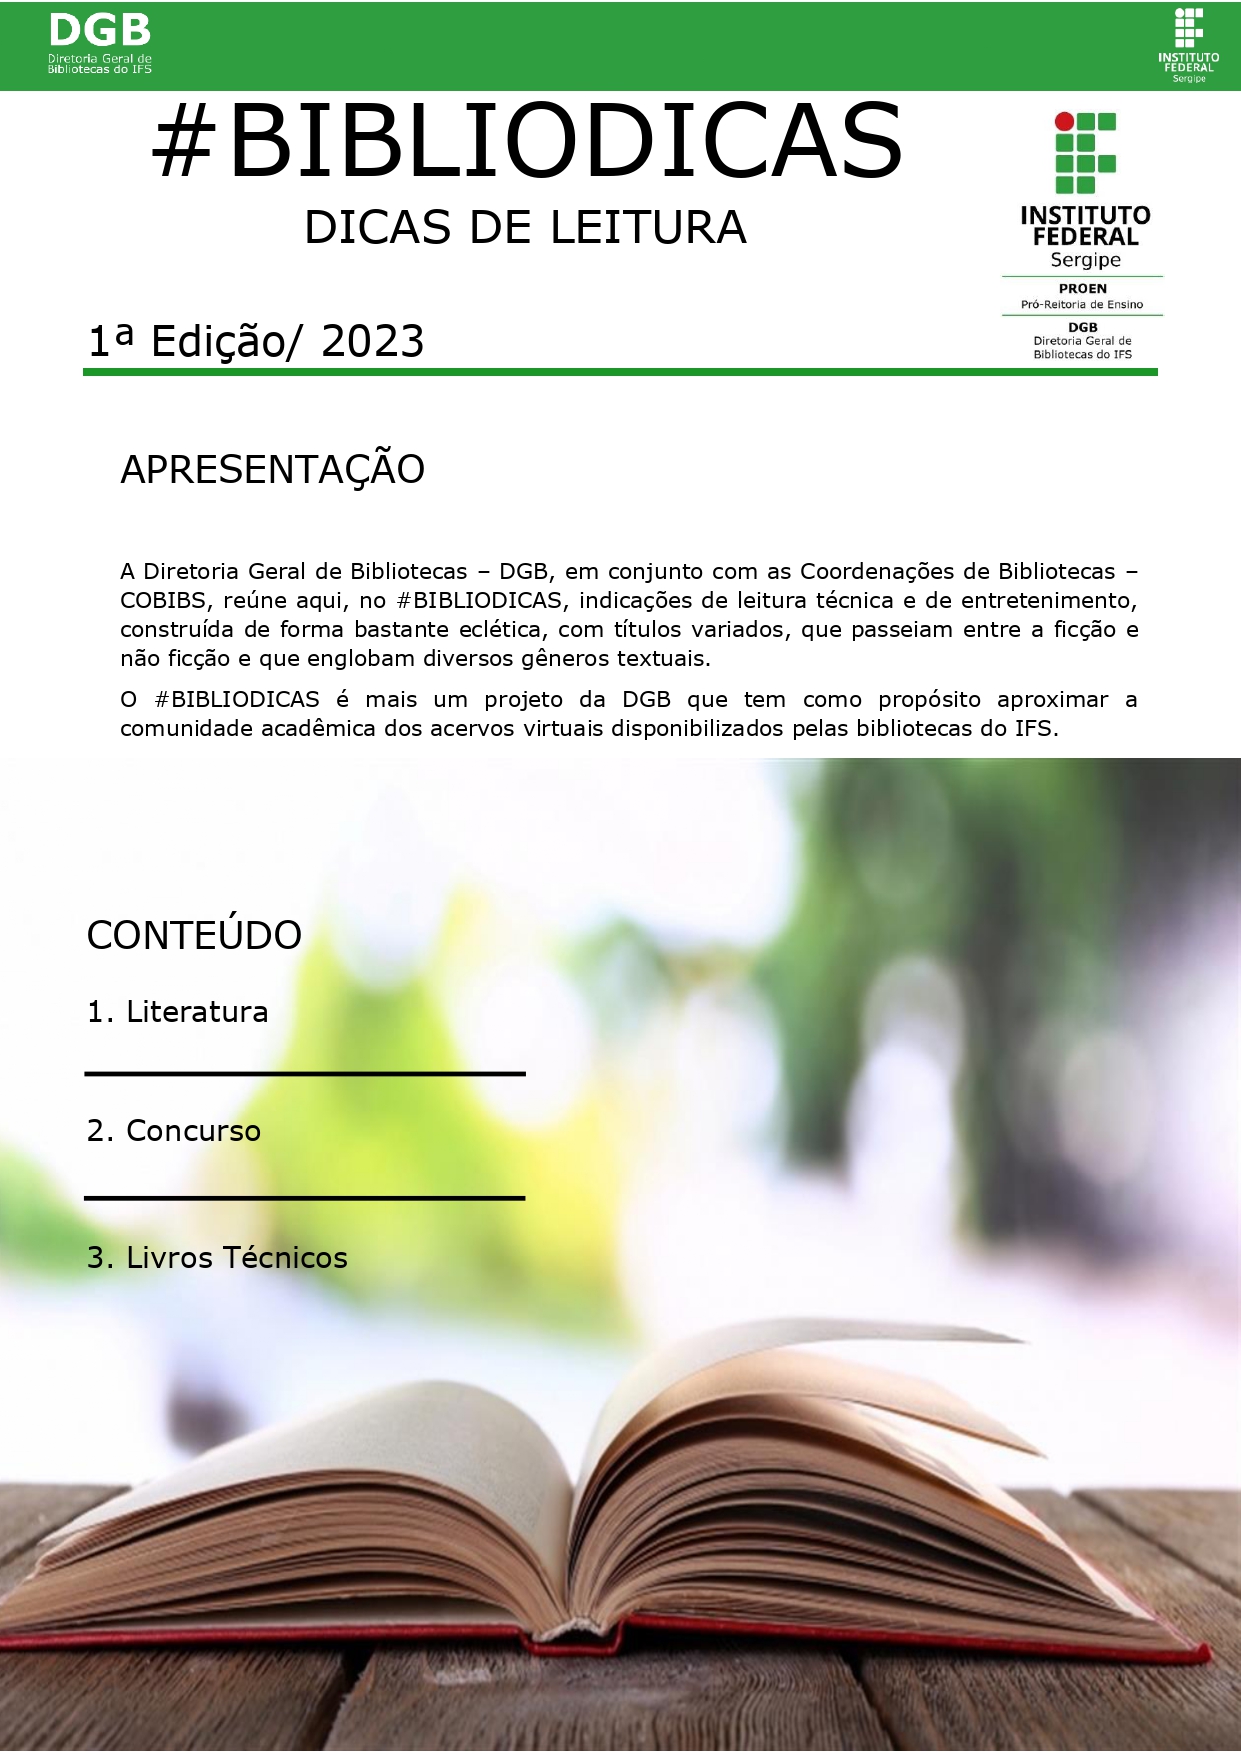 Bibliodicas - 1ª Edição JANEIRO 2023 - CAPA_jpg.jpg